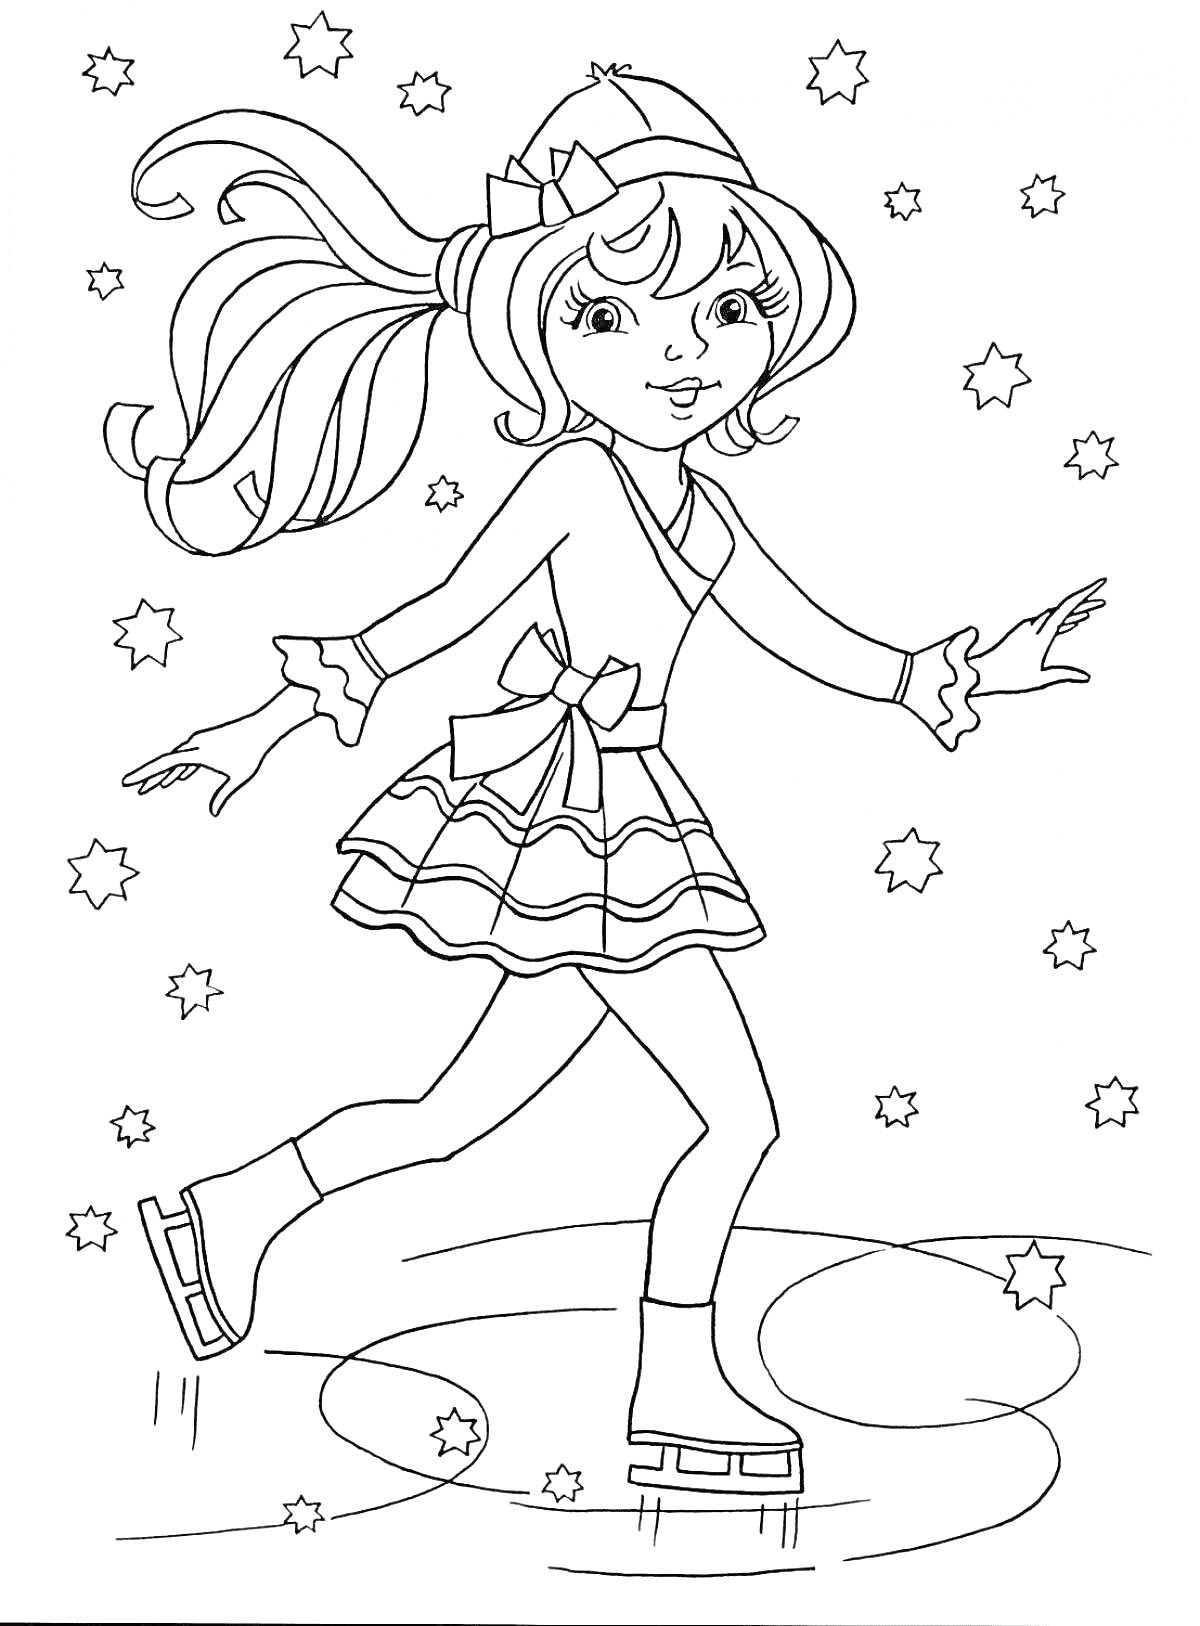 Раскраска Фигуристка на льду, девушка в юбке и свитере с бантом, шапка с помпоном, коньки, звезды вокруг, волосы развеваются